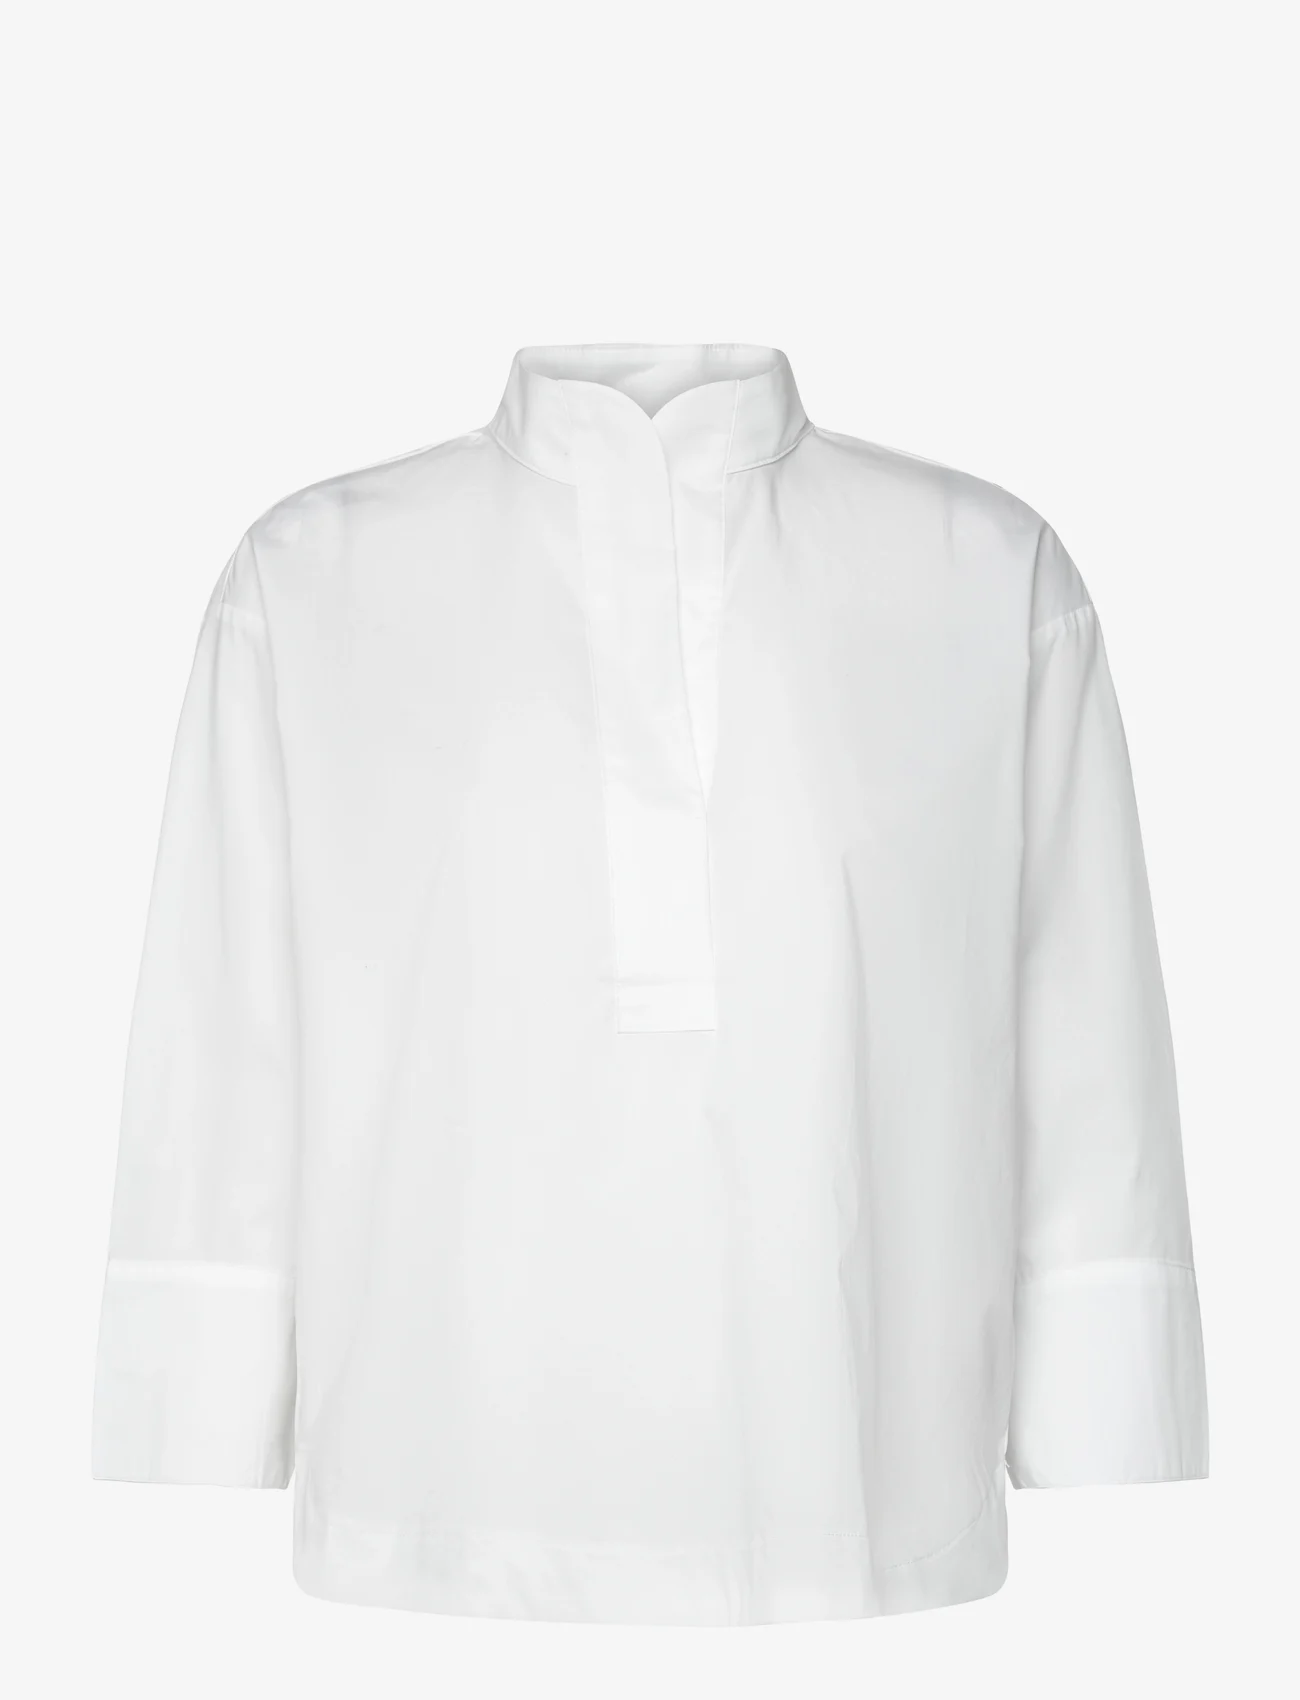 Gerry Weber Edition - BLOUSE 3/4 SLEEVE - marškiniai ilgomis rankovėmis - white/white - 0